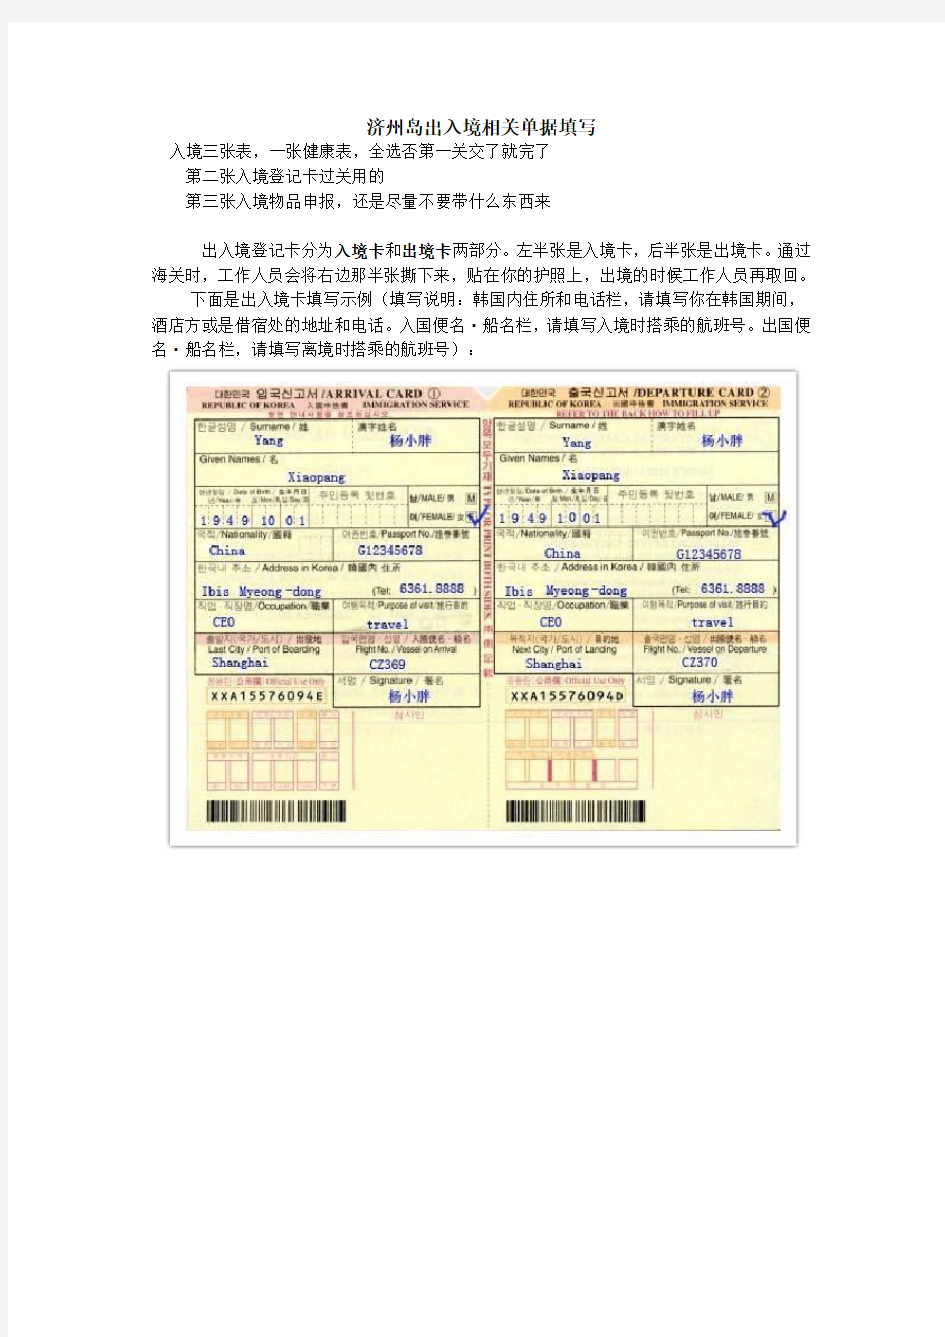 2.2016.06.24济州岛出入境相关单据填写说明